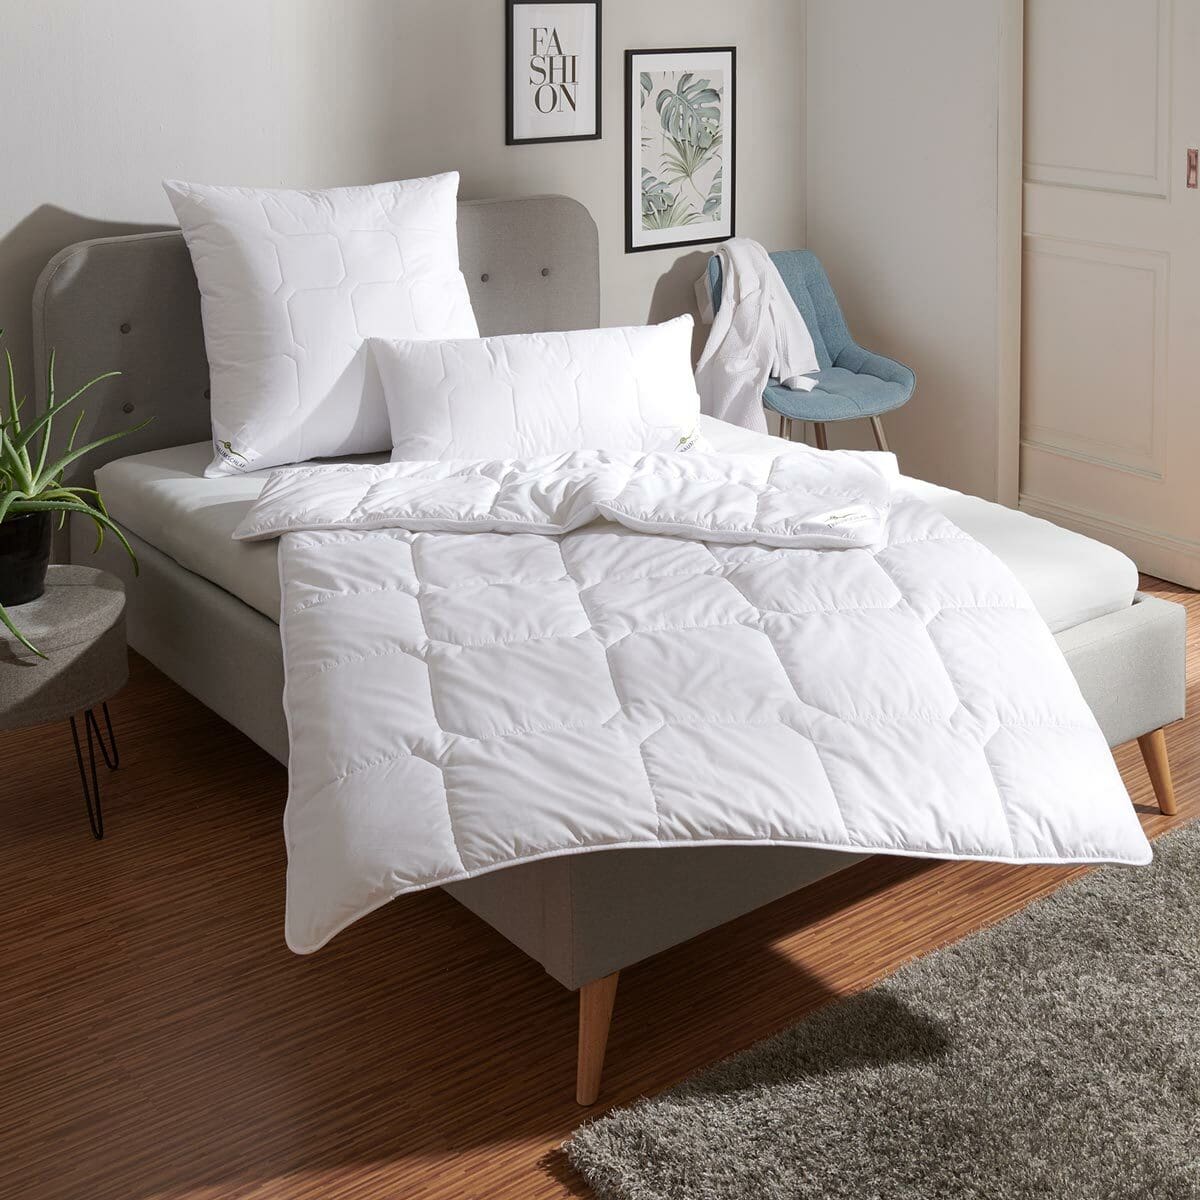 Traumschlaf Thinsulate Bettdecke warm, Füllung: 100% 3M Thinsulate Faser  günstig online kaufen bei Bettwaren Shop